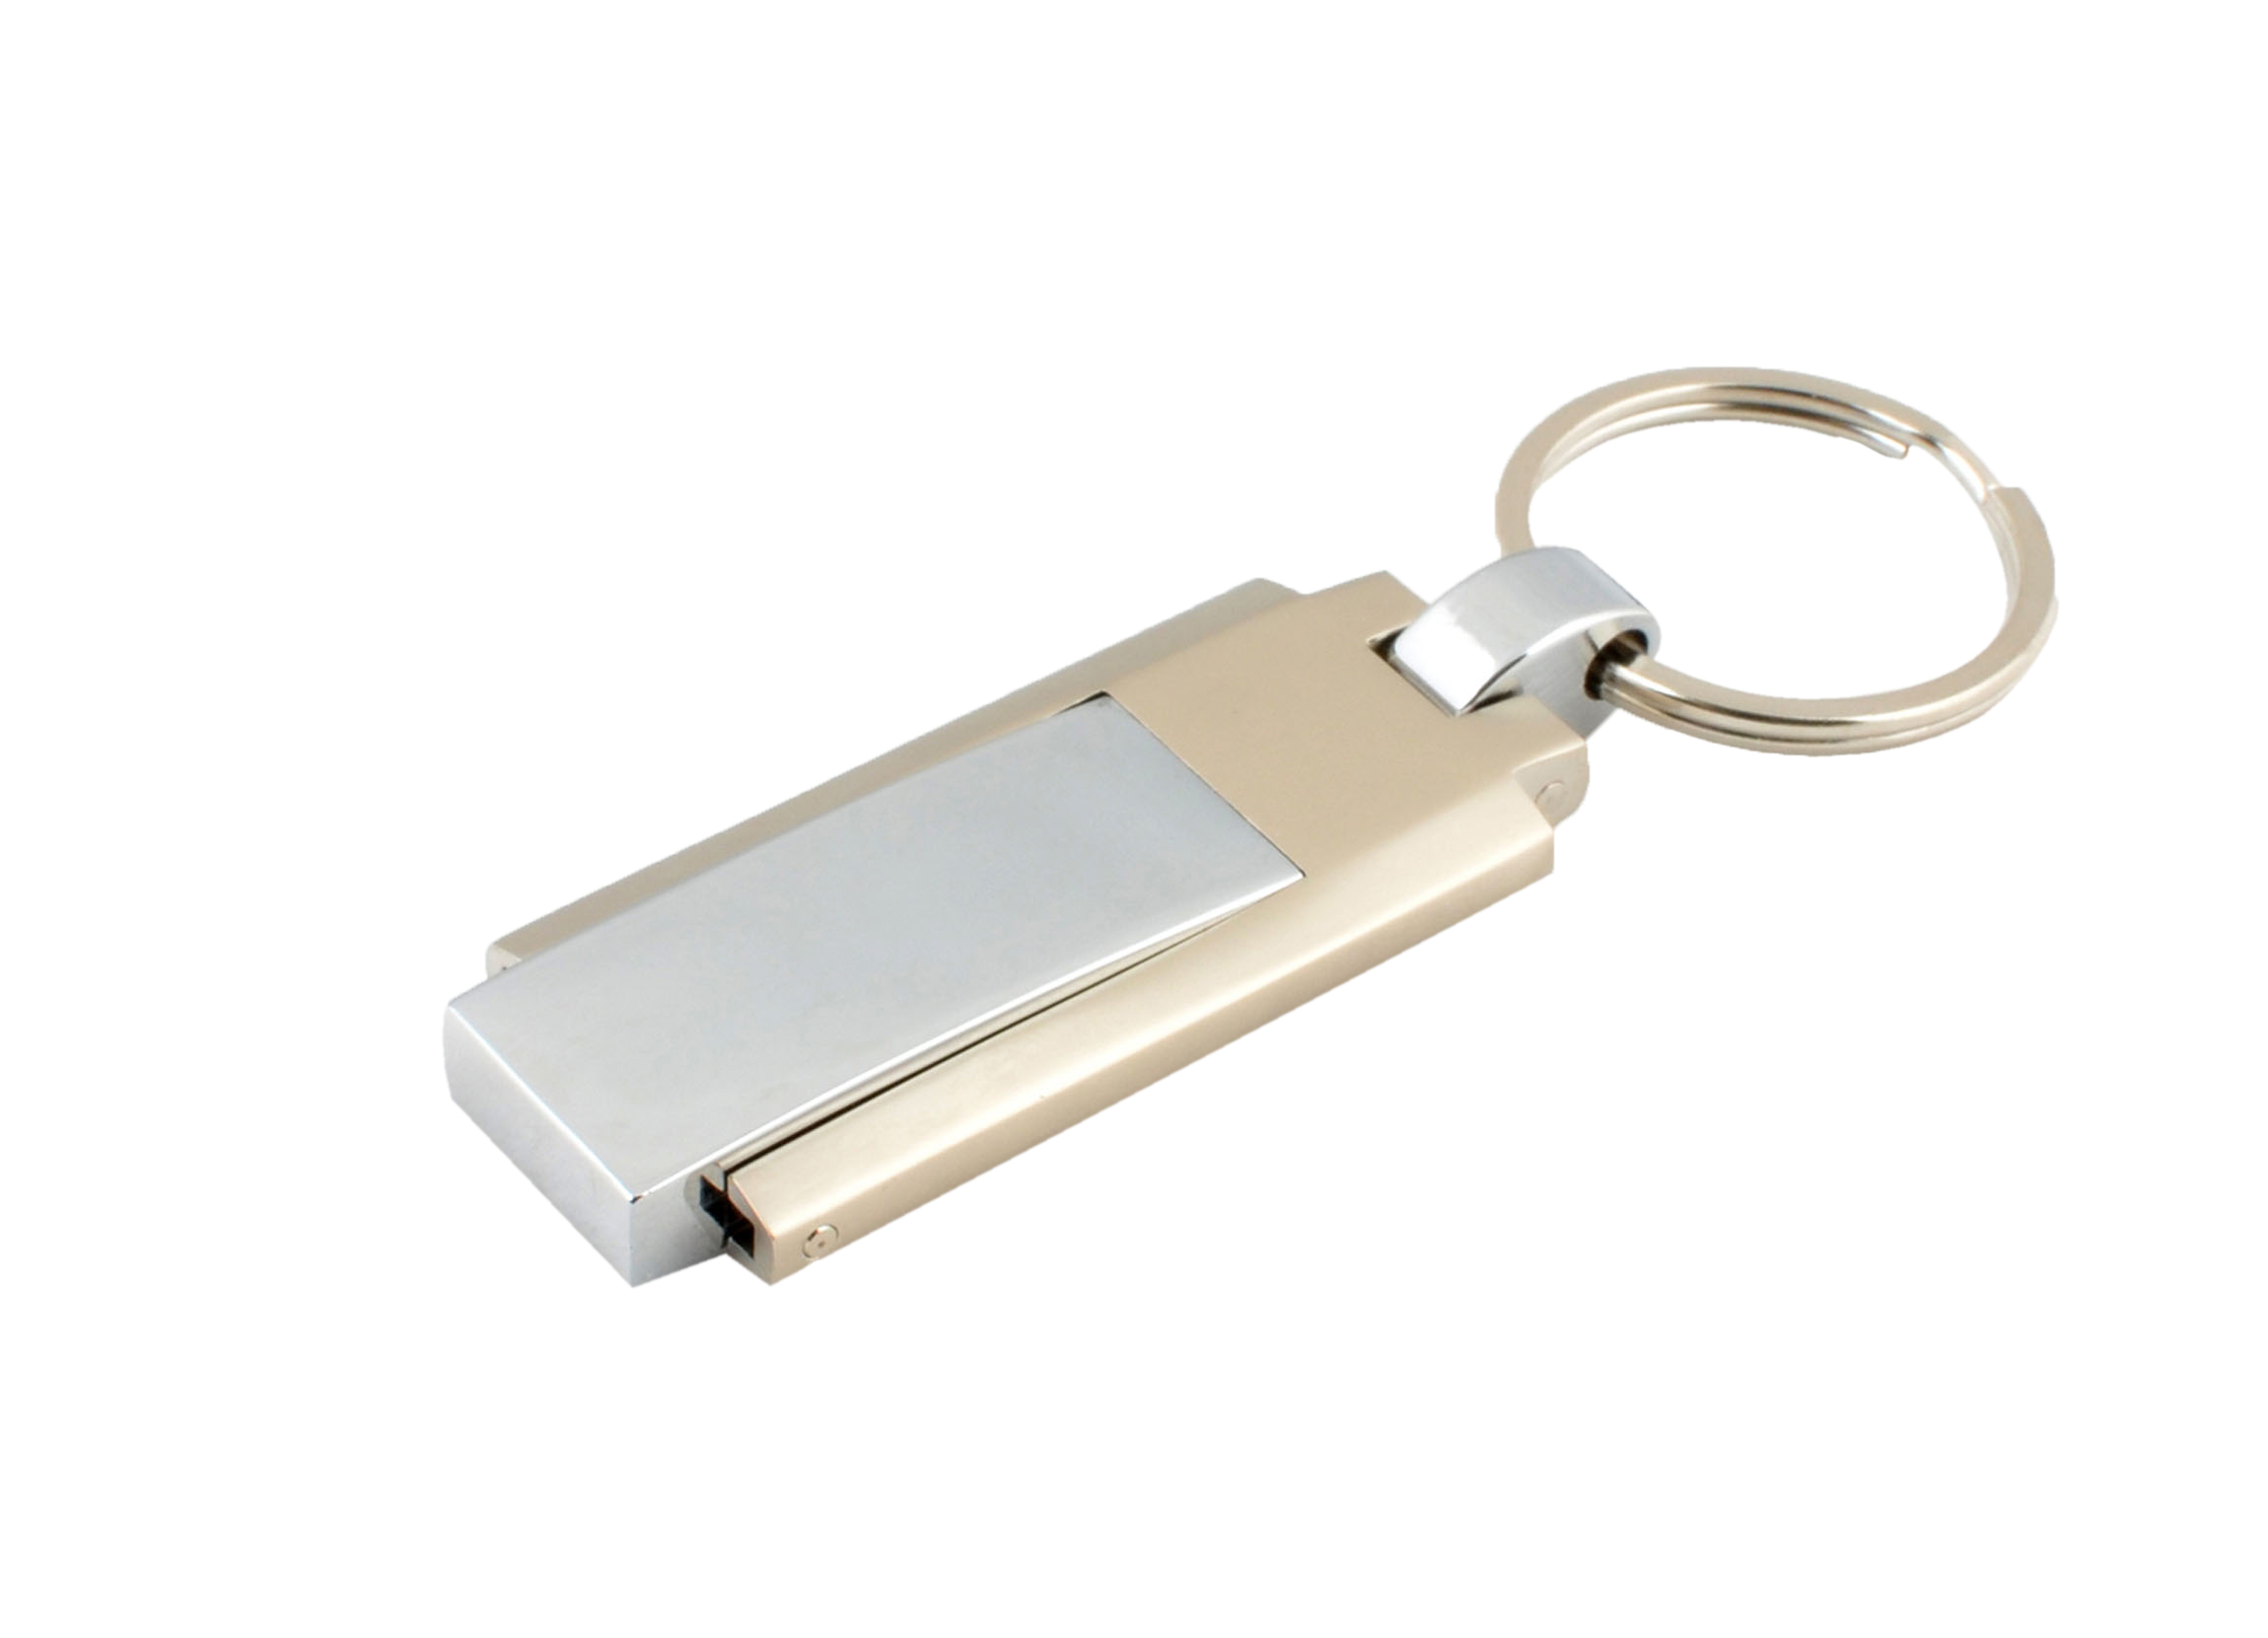 Classic USB flash drive FLINT USB 3.0 silver